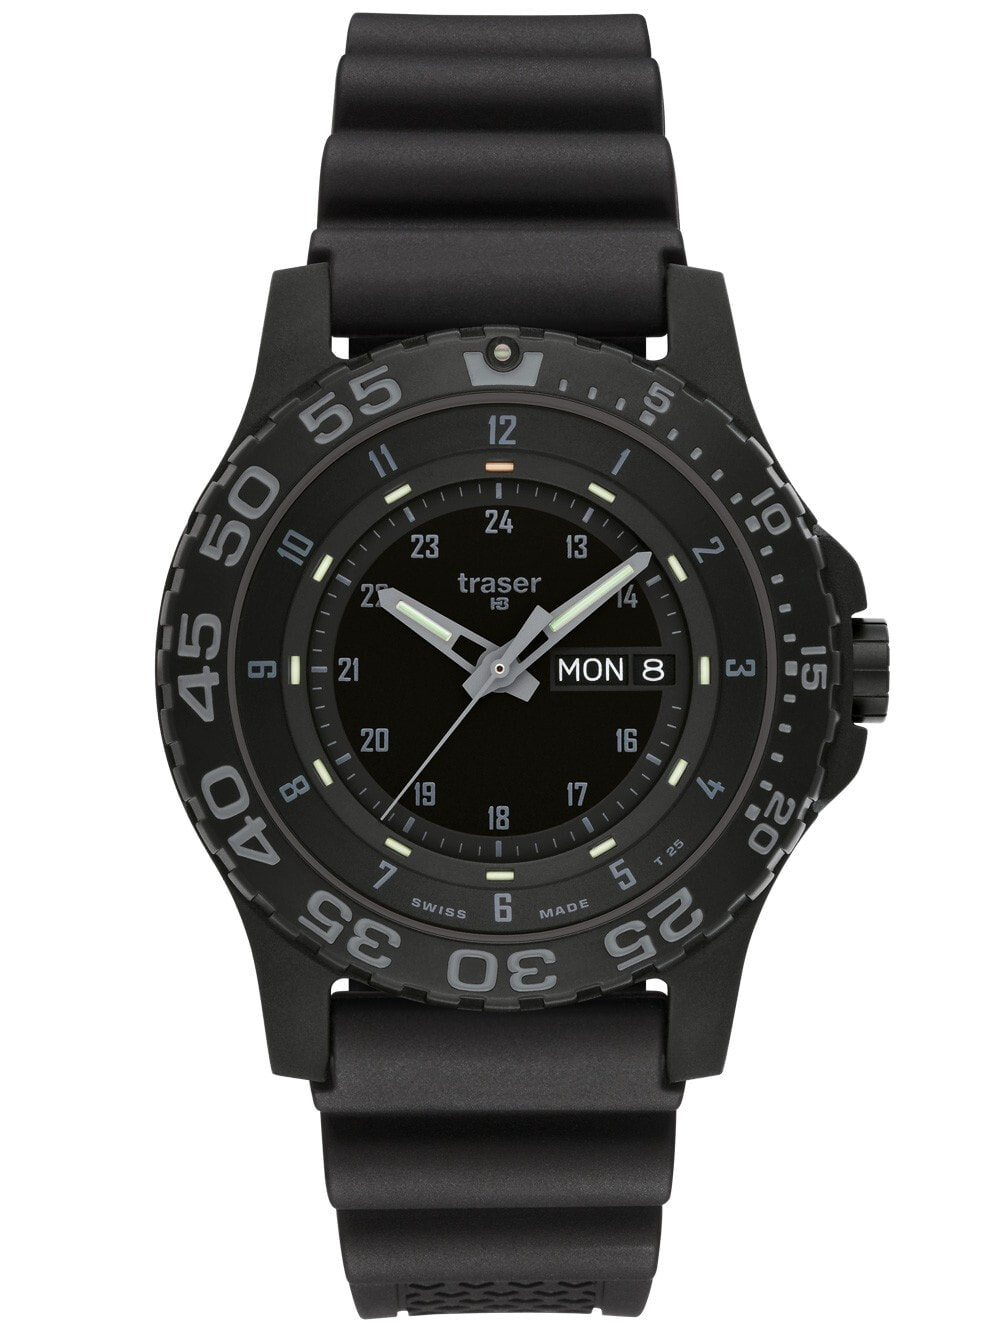 Мужские наручные часы с черным силиконовым ремешком Traser H3 104207 P66 Shade 45mm 20 ATM